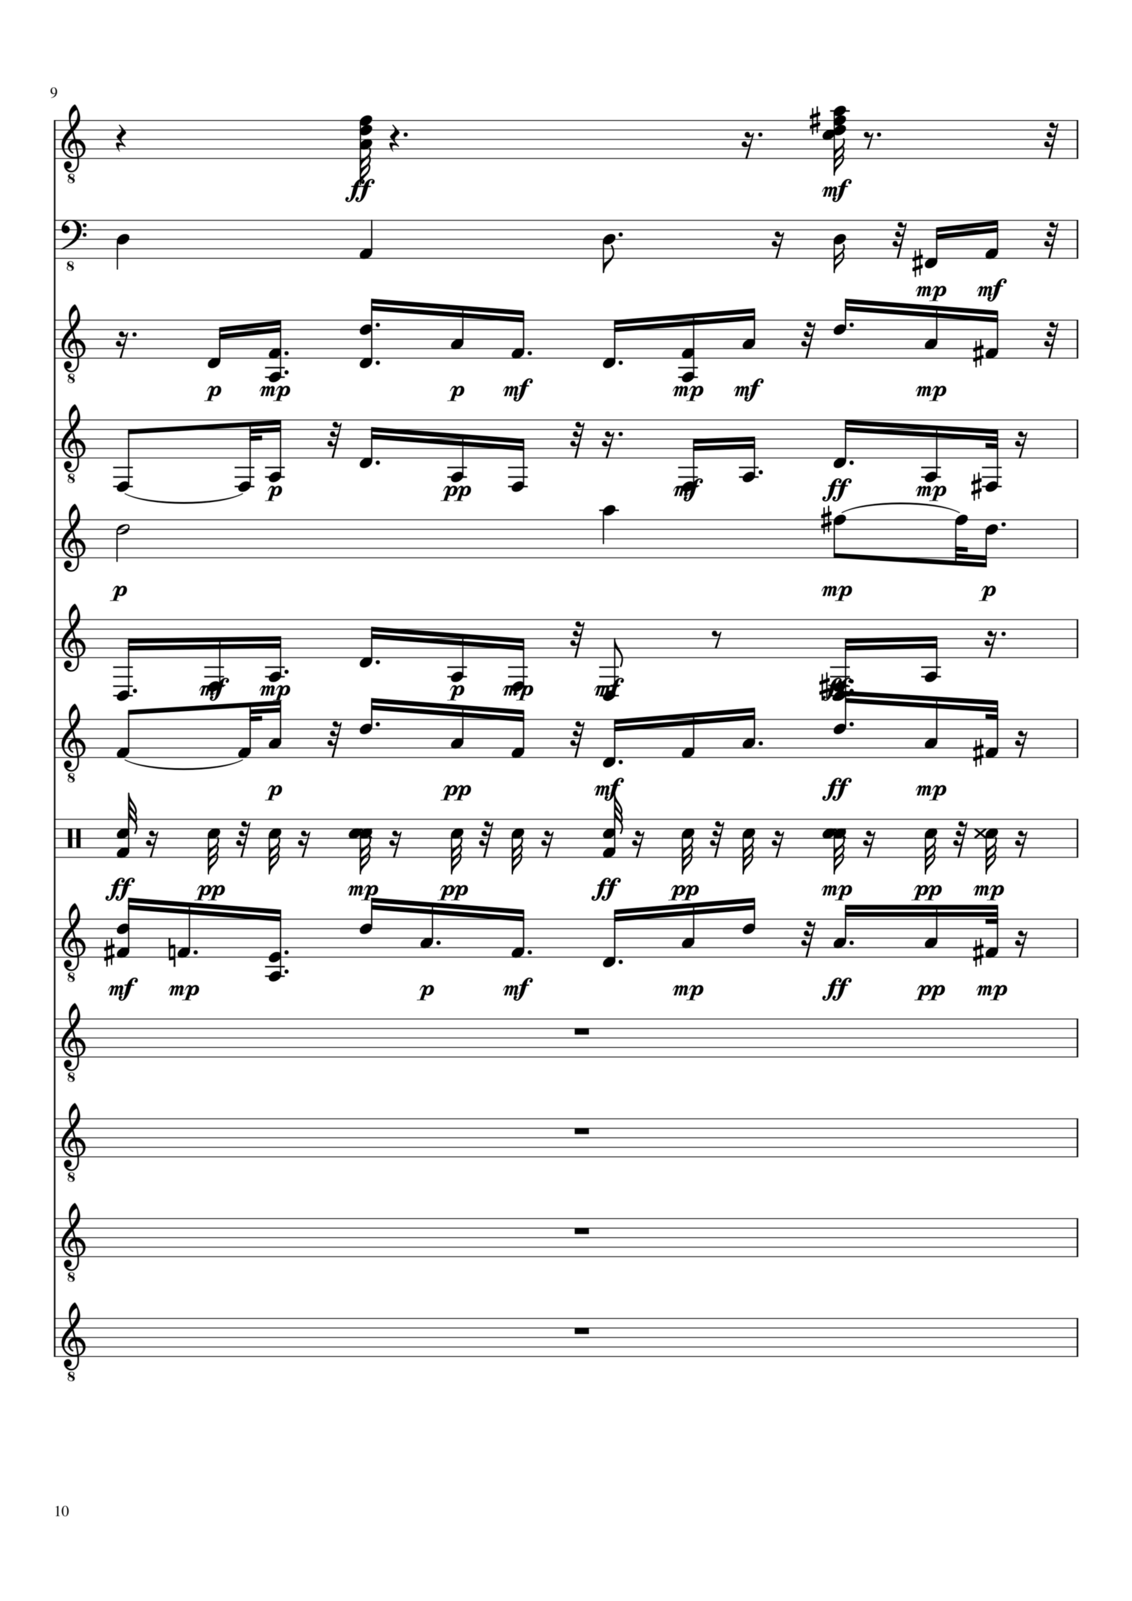 Vechnaya prizrachnaya vstrechnaya slide, Image 29